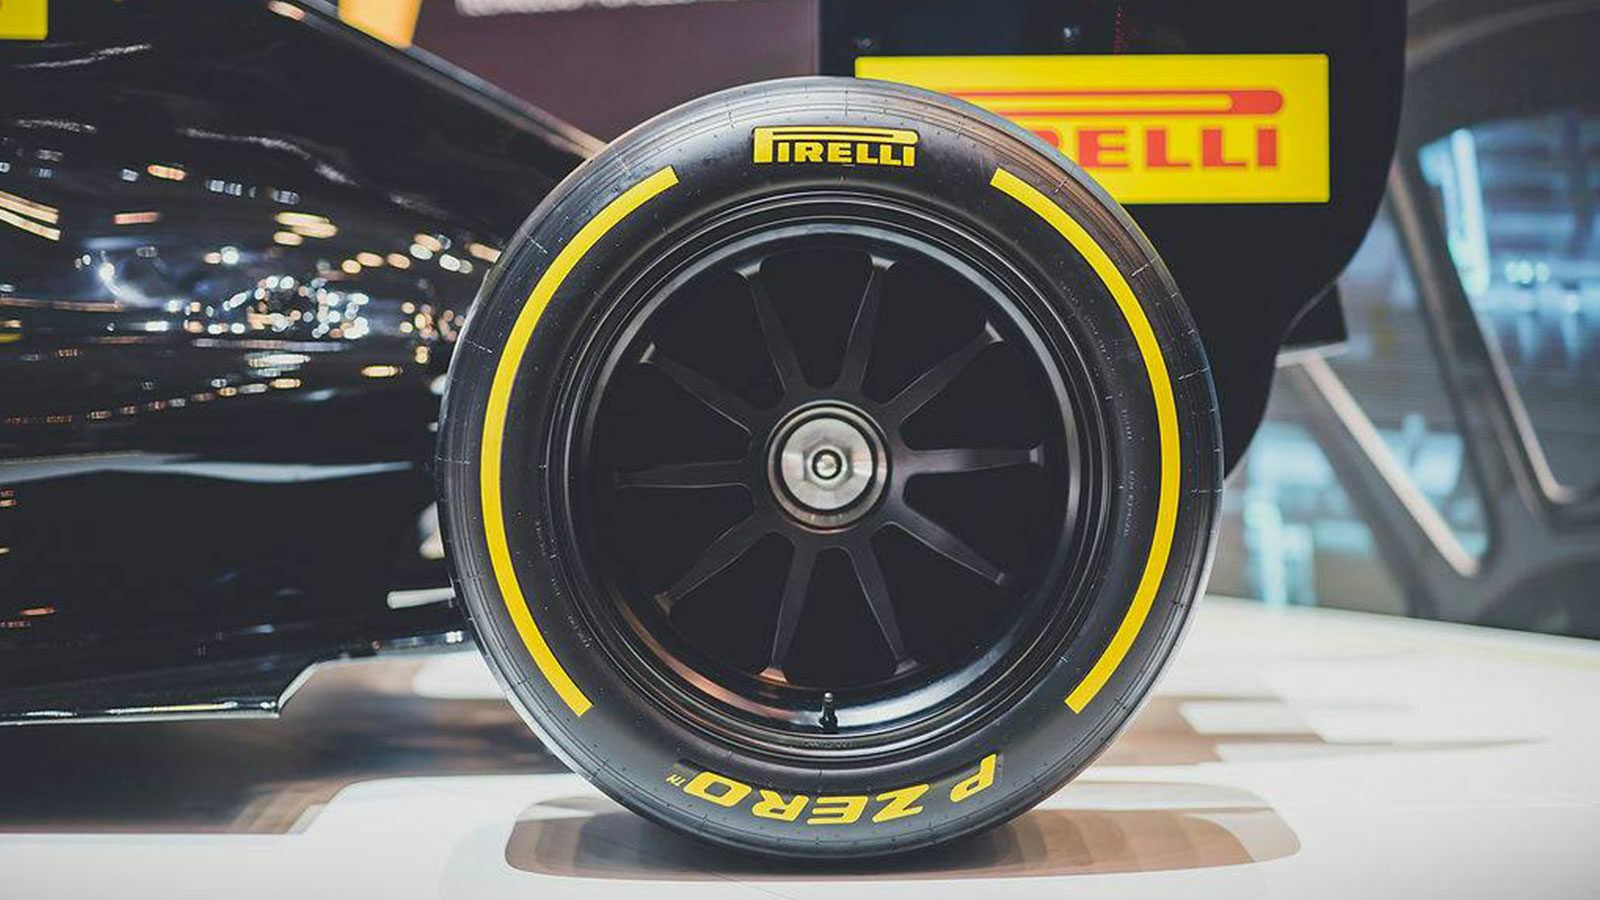 Formel-1: Reifen für 2020 einstimmig abgelehnt